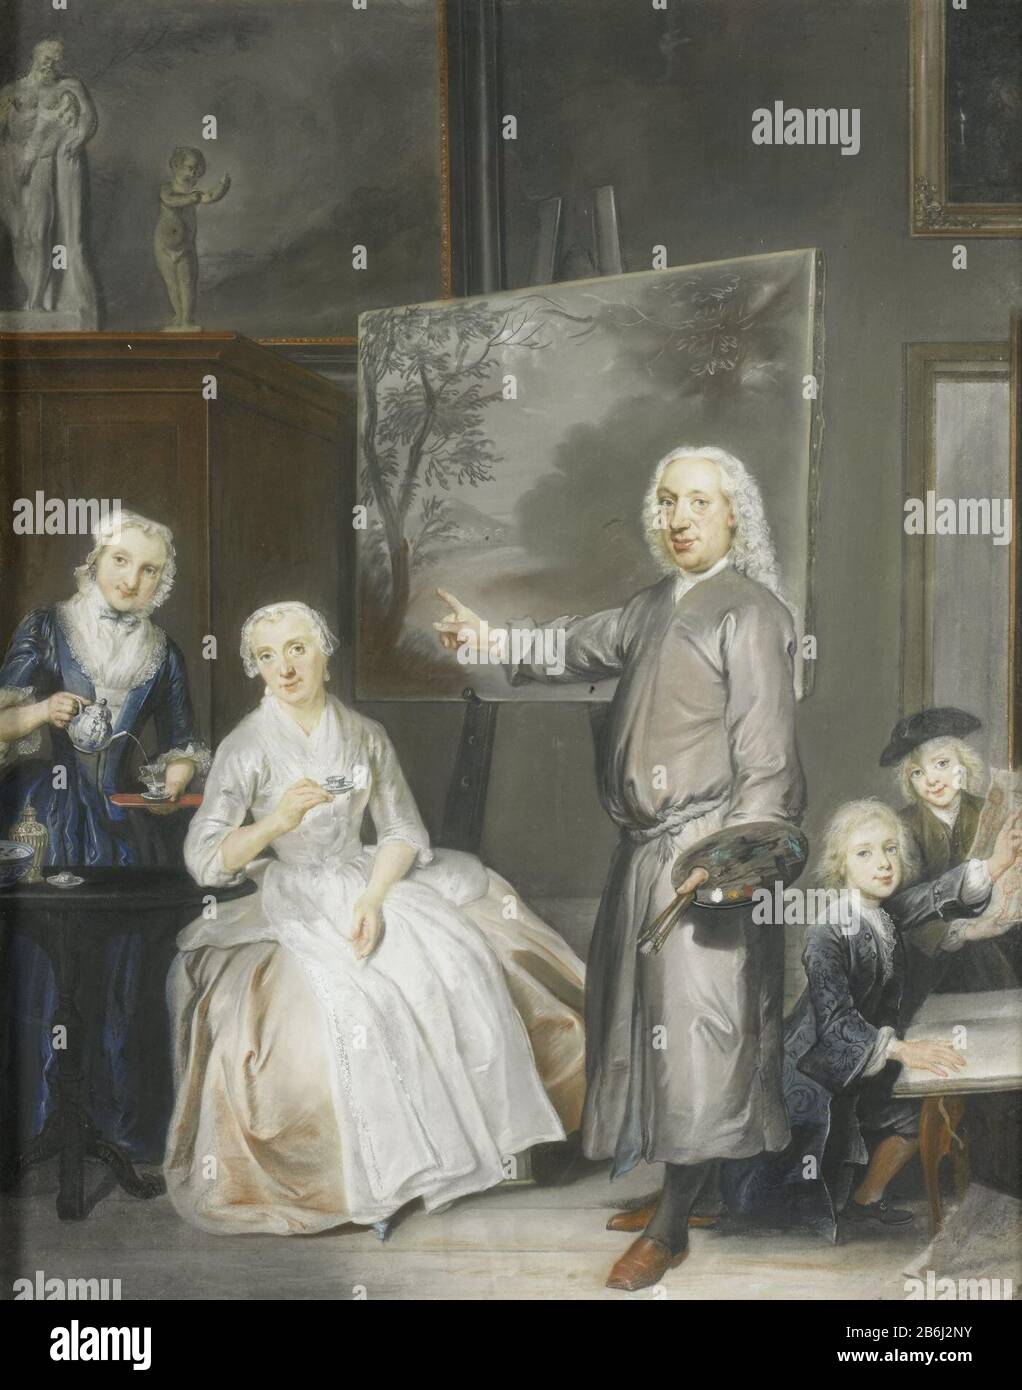 Il pittore paesaggista Dirk Dalens III (1688-1753) e la sua seconda moglie Mary Schaack (morta nel 1766) e i figli Anna (nata nel 1725), William (1737-60) e James (1741-63), SK-A-3745 Ritratto familiare del pittore paesaggista Dirk Dalens III (1688-1753) e la sua seconda moglie Mary Schaack (morta nel 1766). E figli Anna (1725), Guglielmo (1737-60) e Giacomo (1741-63 ). La sinistra dà un servo una tazza di tè. Il pittore si trova al centro con palette e pennelli nella sua mano sinistra e punta a un dipinto di un paesaggio su un asino, a destra vedere due disegni ragazzi. Sulle pareti appendono diversi dipinti, una destra Foto Stock